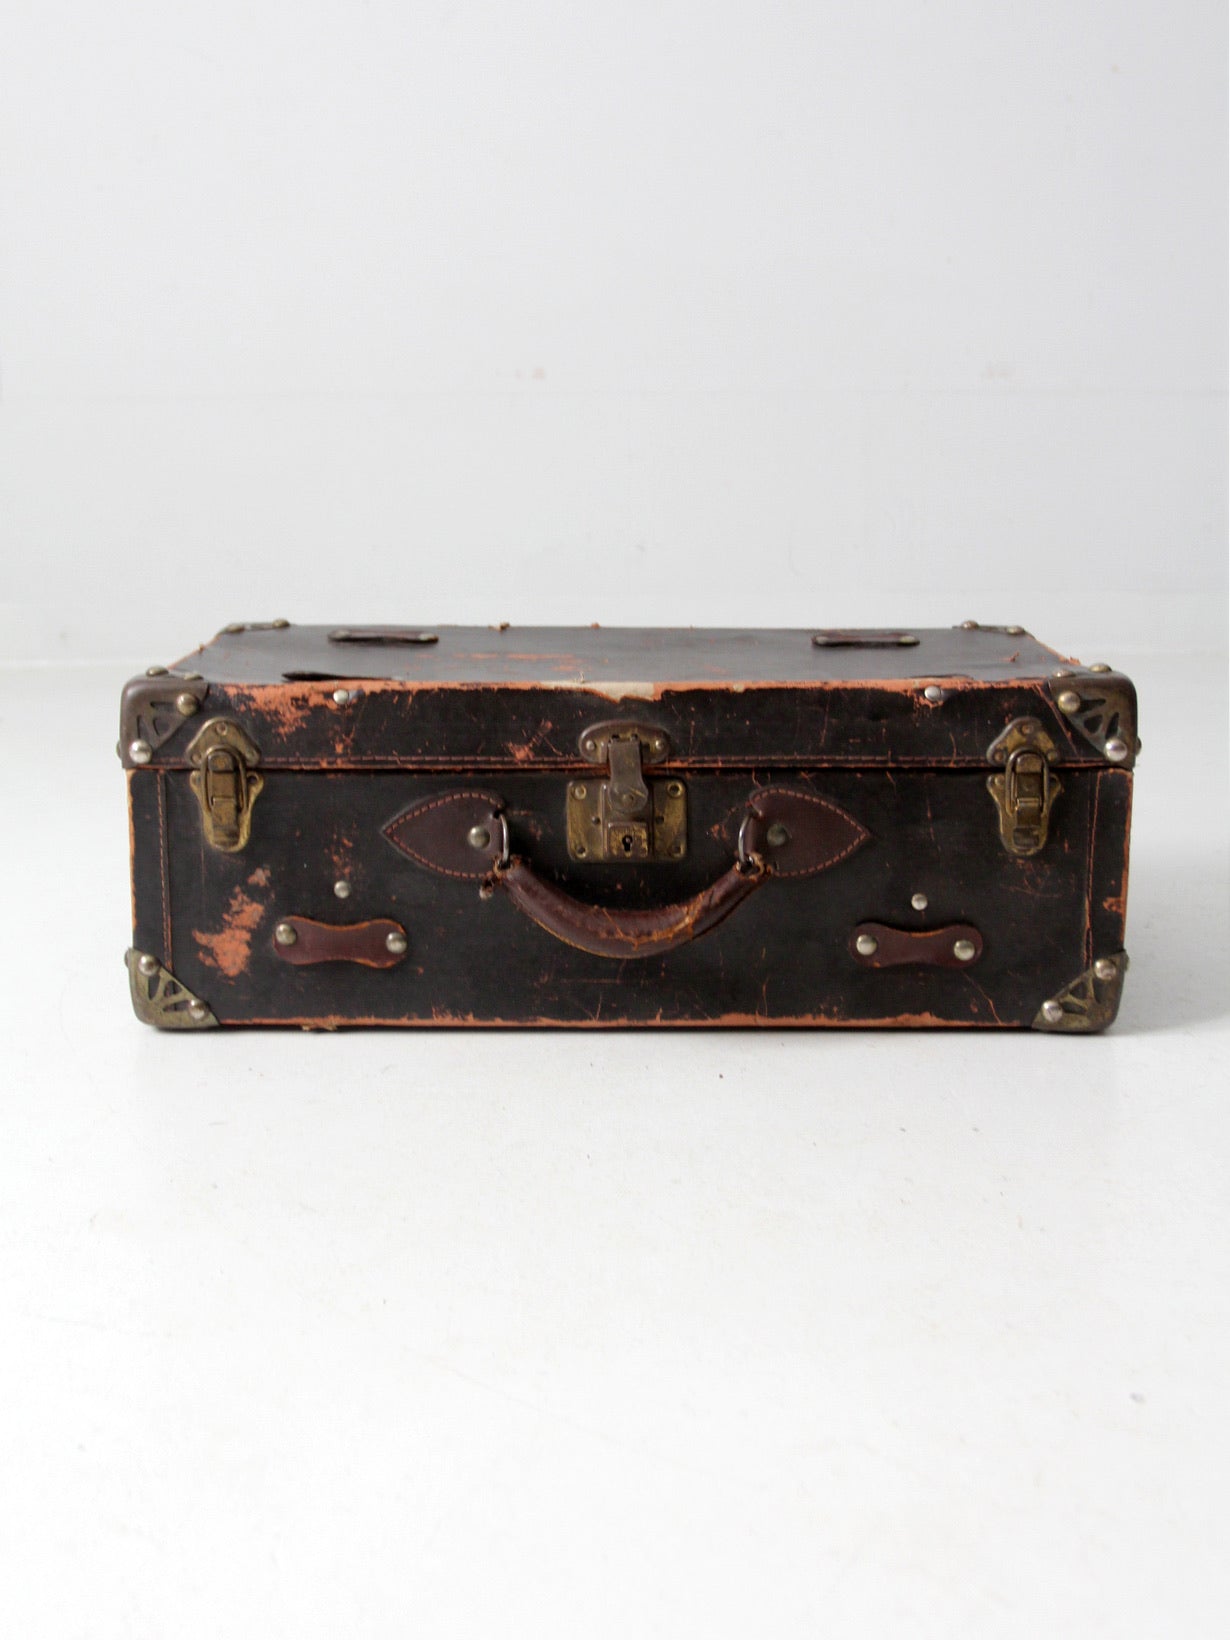 vintage brown cardboard suitcase